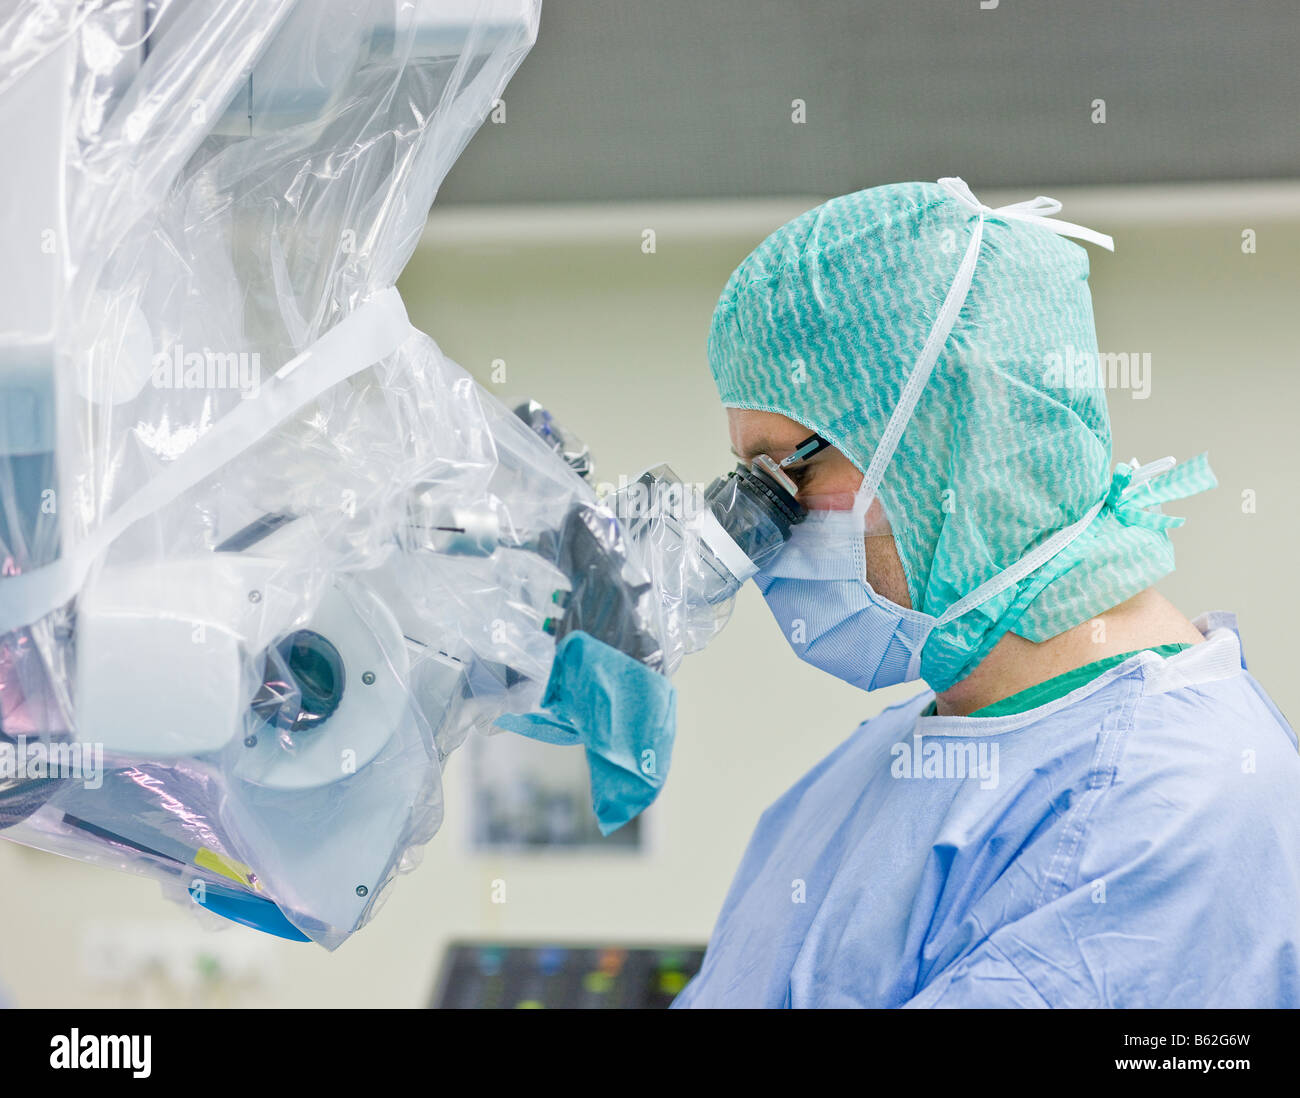 Neurochirurgo utilizzando hi-tech microscopio durante la procedura chirurgica per rimuovere un benigne tumore al cervello, Reykjavik, Islanda Foto Stock